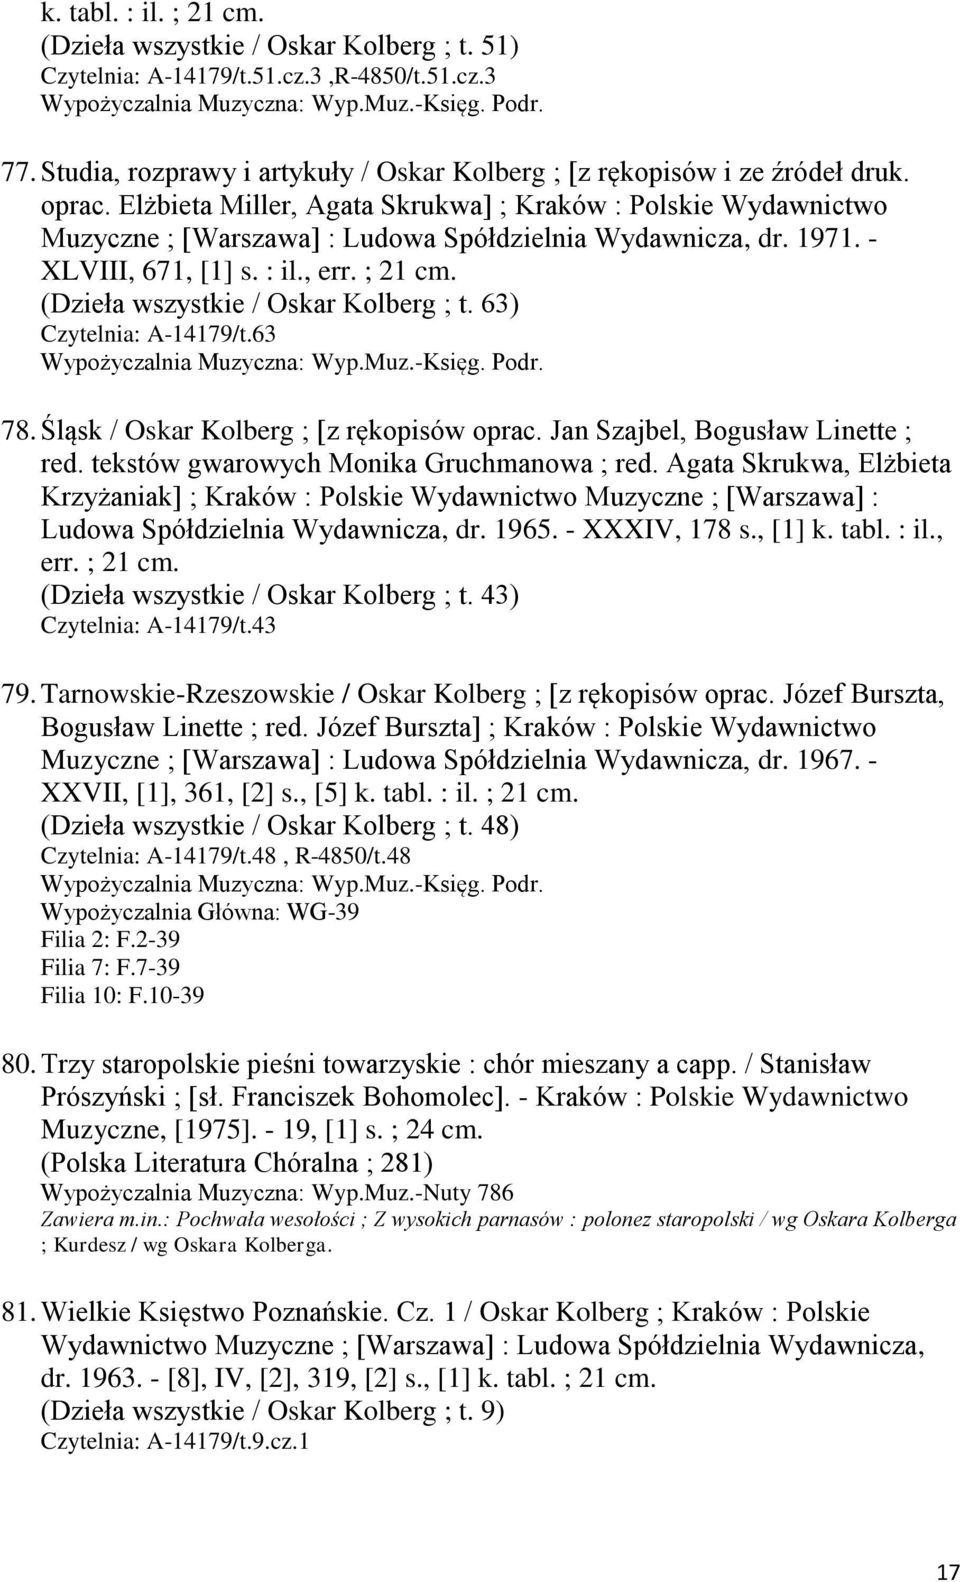 Elżbieta Miller, Agata Skrukwa] ; Kraków : Polskie Wydawnictwo Muzyczne ; [Warszawa] : Ludowa Spółdzielnia Wydawnicza, dr. 1971. - XLVIII, 671, [1] s. : il., err. ; 21 cm.